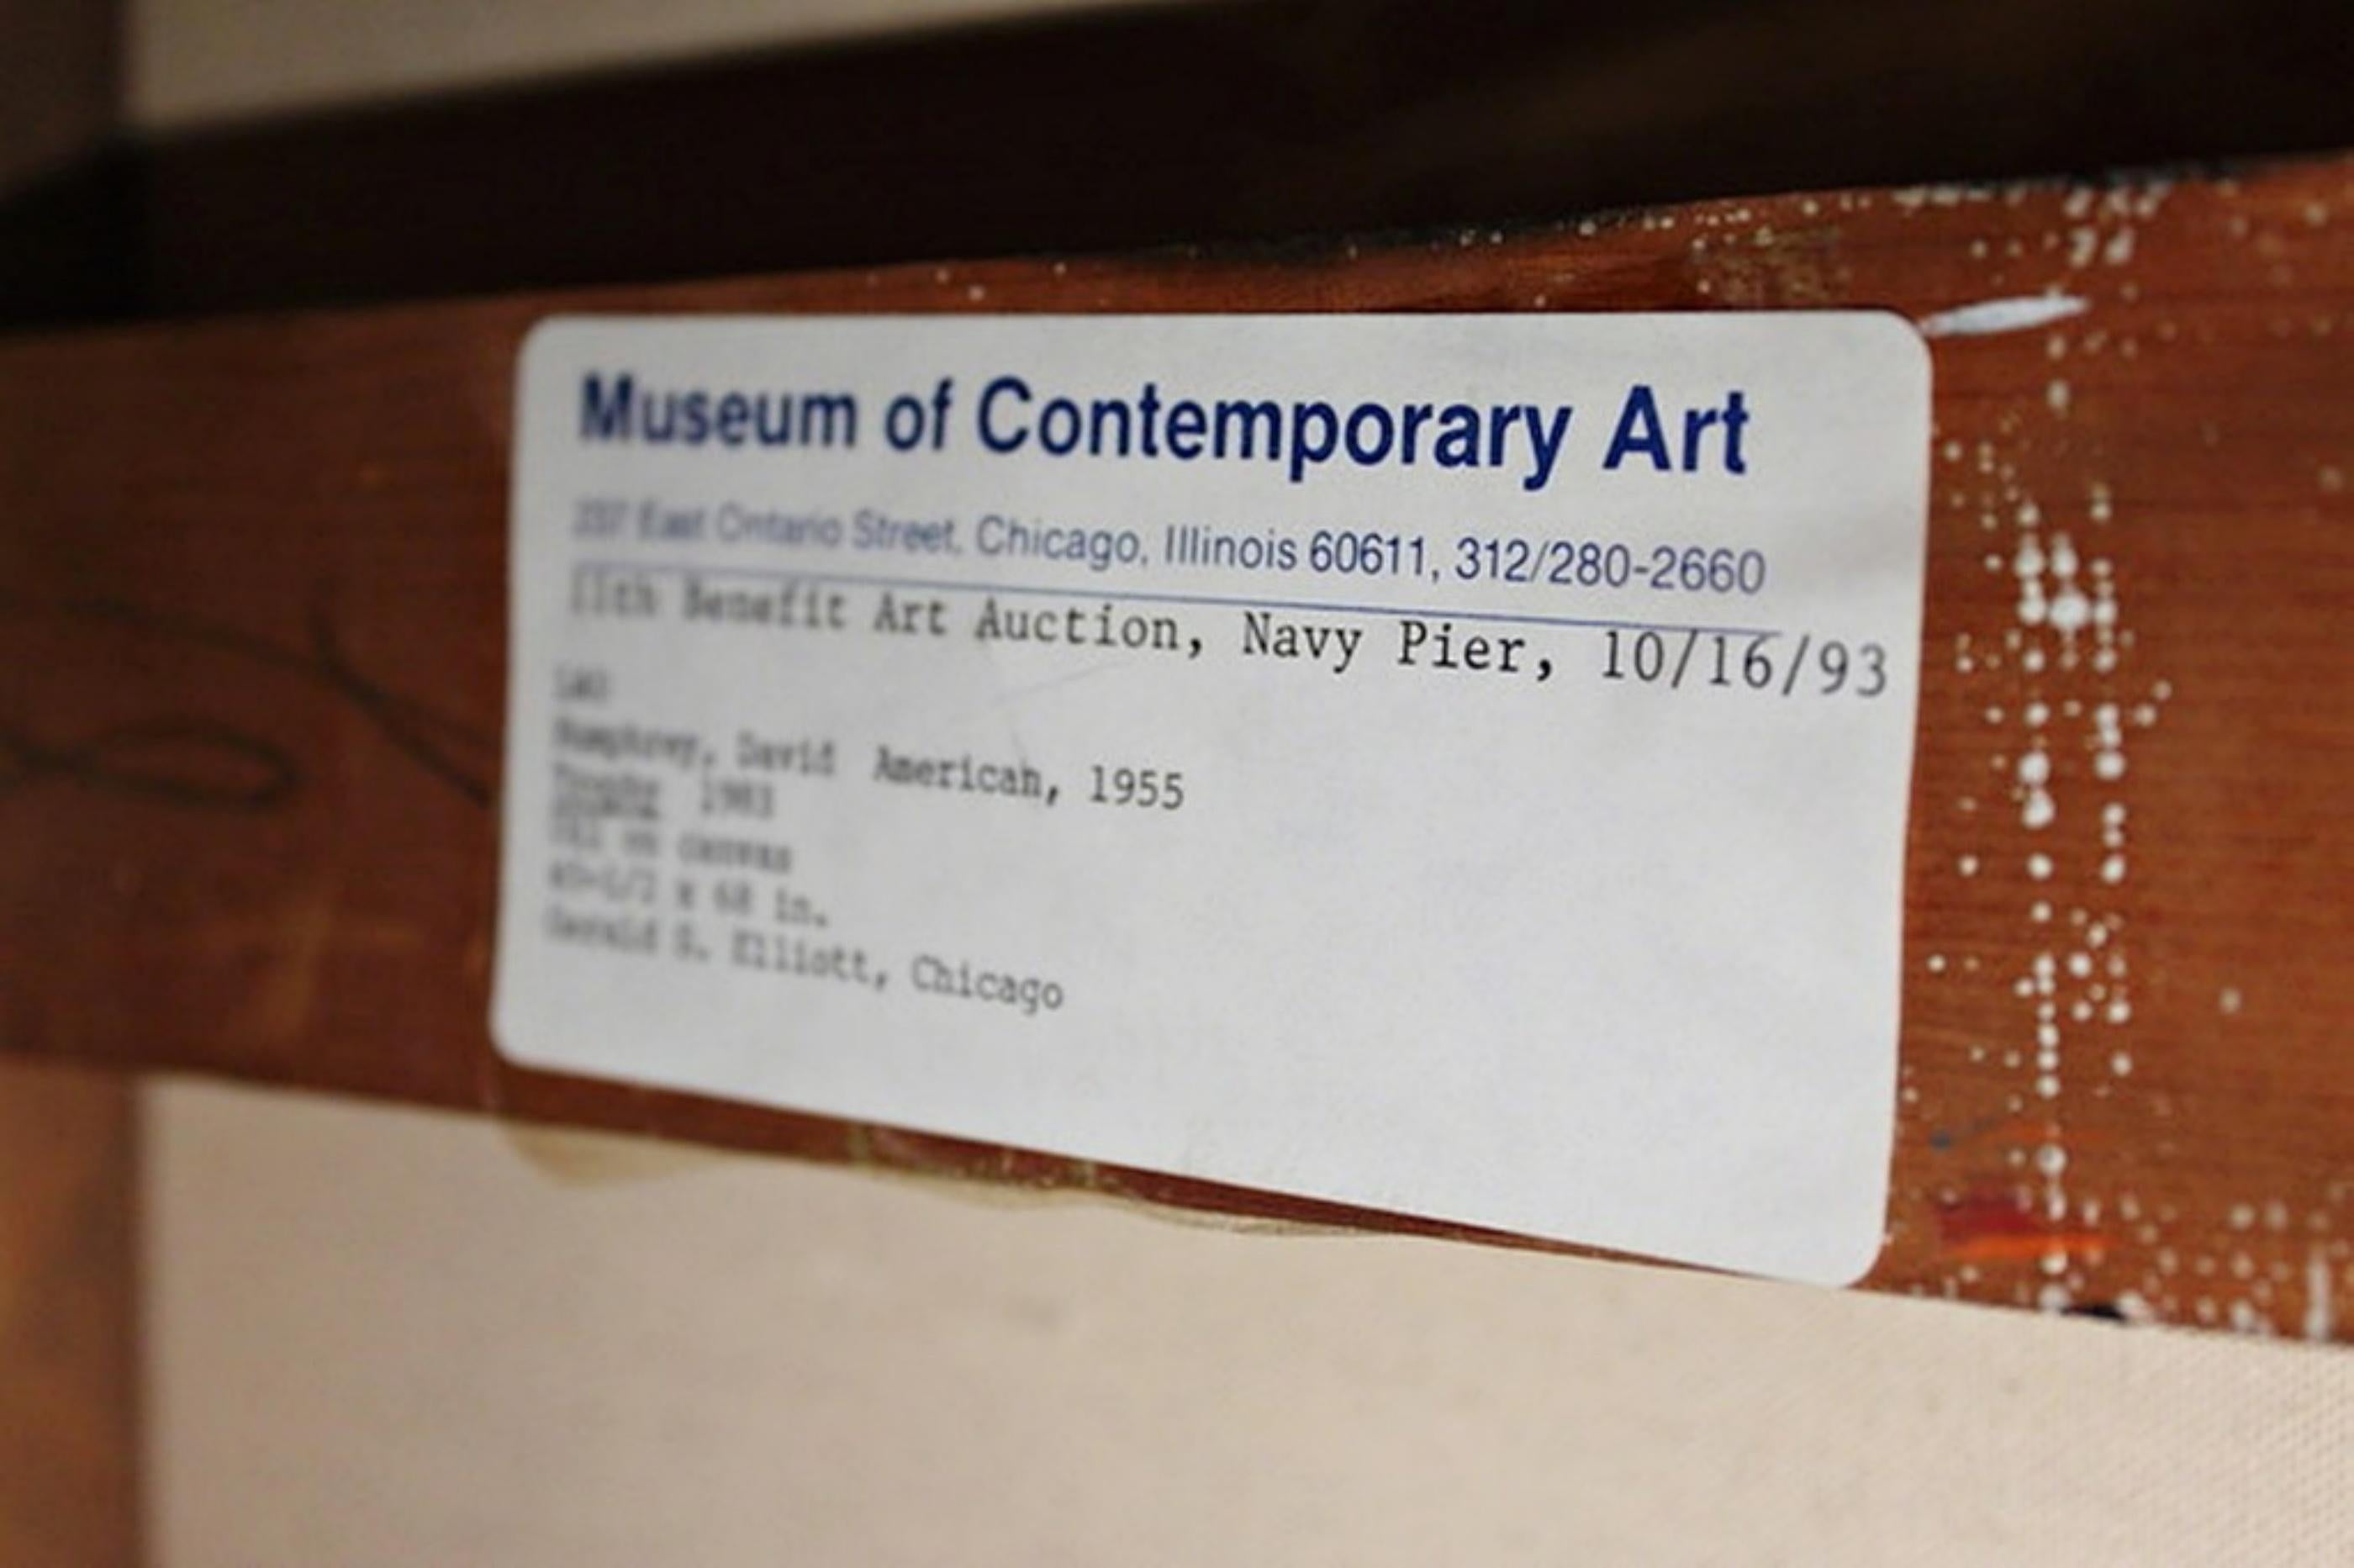 David Humphrey
Trophäe (Museum für zeitgenössische Kunst, Chicago), 1983
Öl auf Leinwand Gemälde
Zweimal signiert: Verso handschriftlich signiert und datiert, außerdem hat der Künstler verso seinen Namen und seine Wohnadresse eingetragen. 
Dies ist